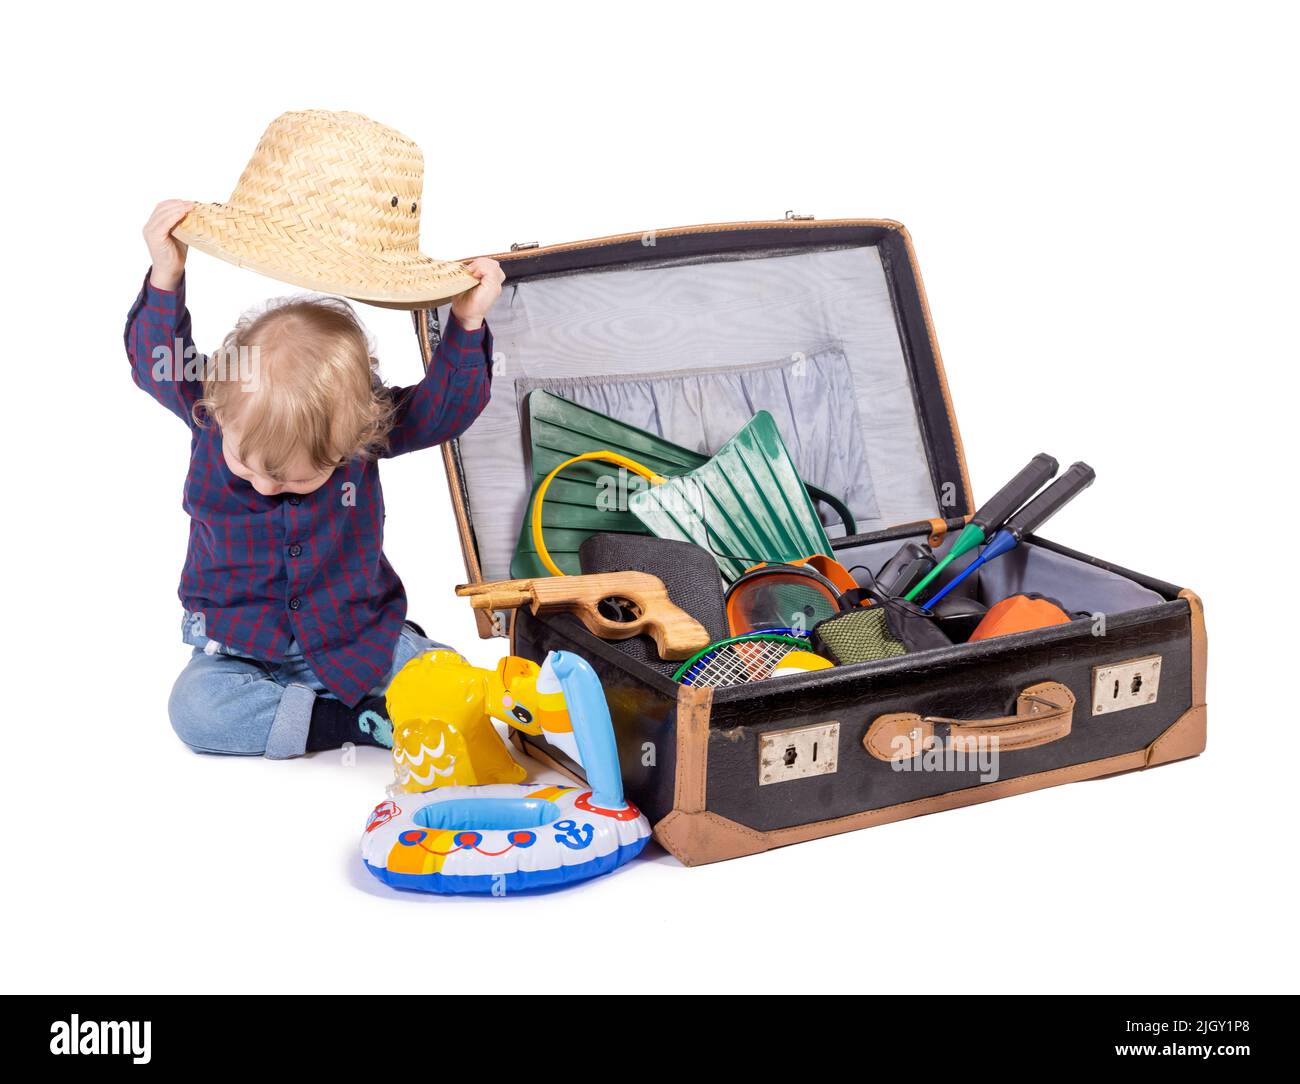 Un ragazzino siede accanto ad una valigia con attrezzatura da viaggio, su sfondo bianco Foto Stock